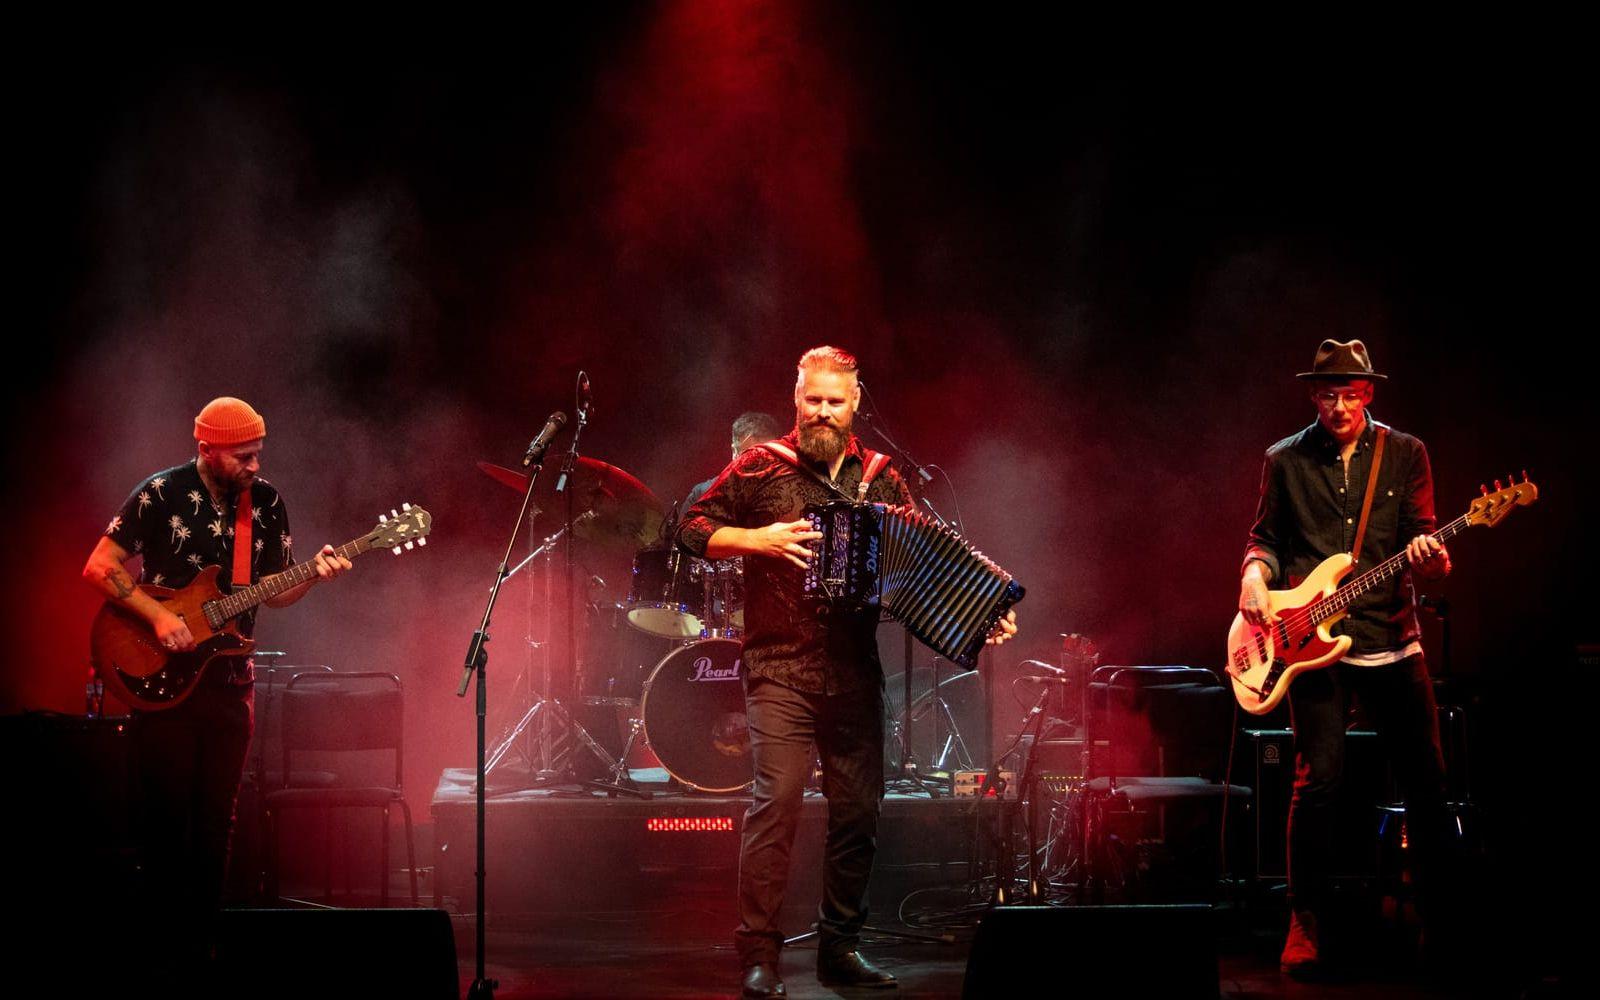 Hårdsvängande Lars Karlsson Band framträdde också under kvällen. 